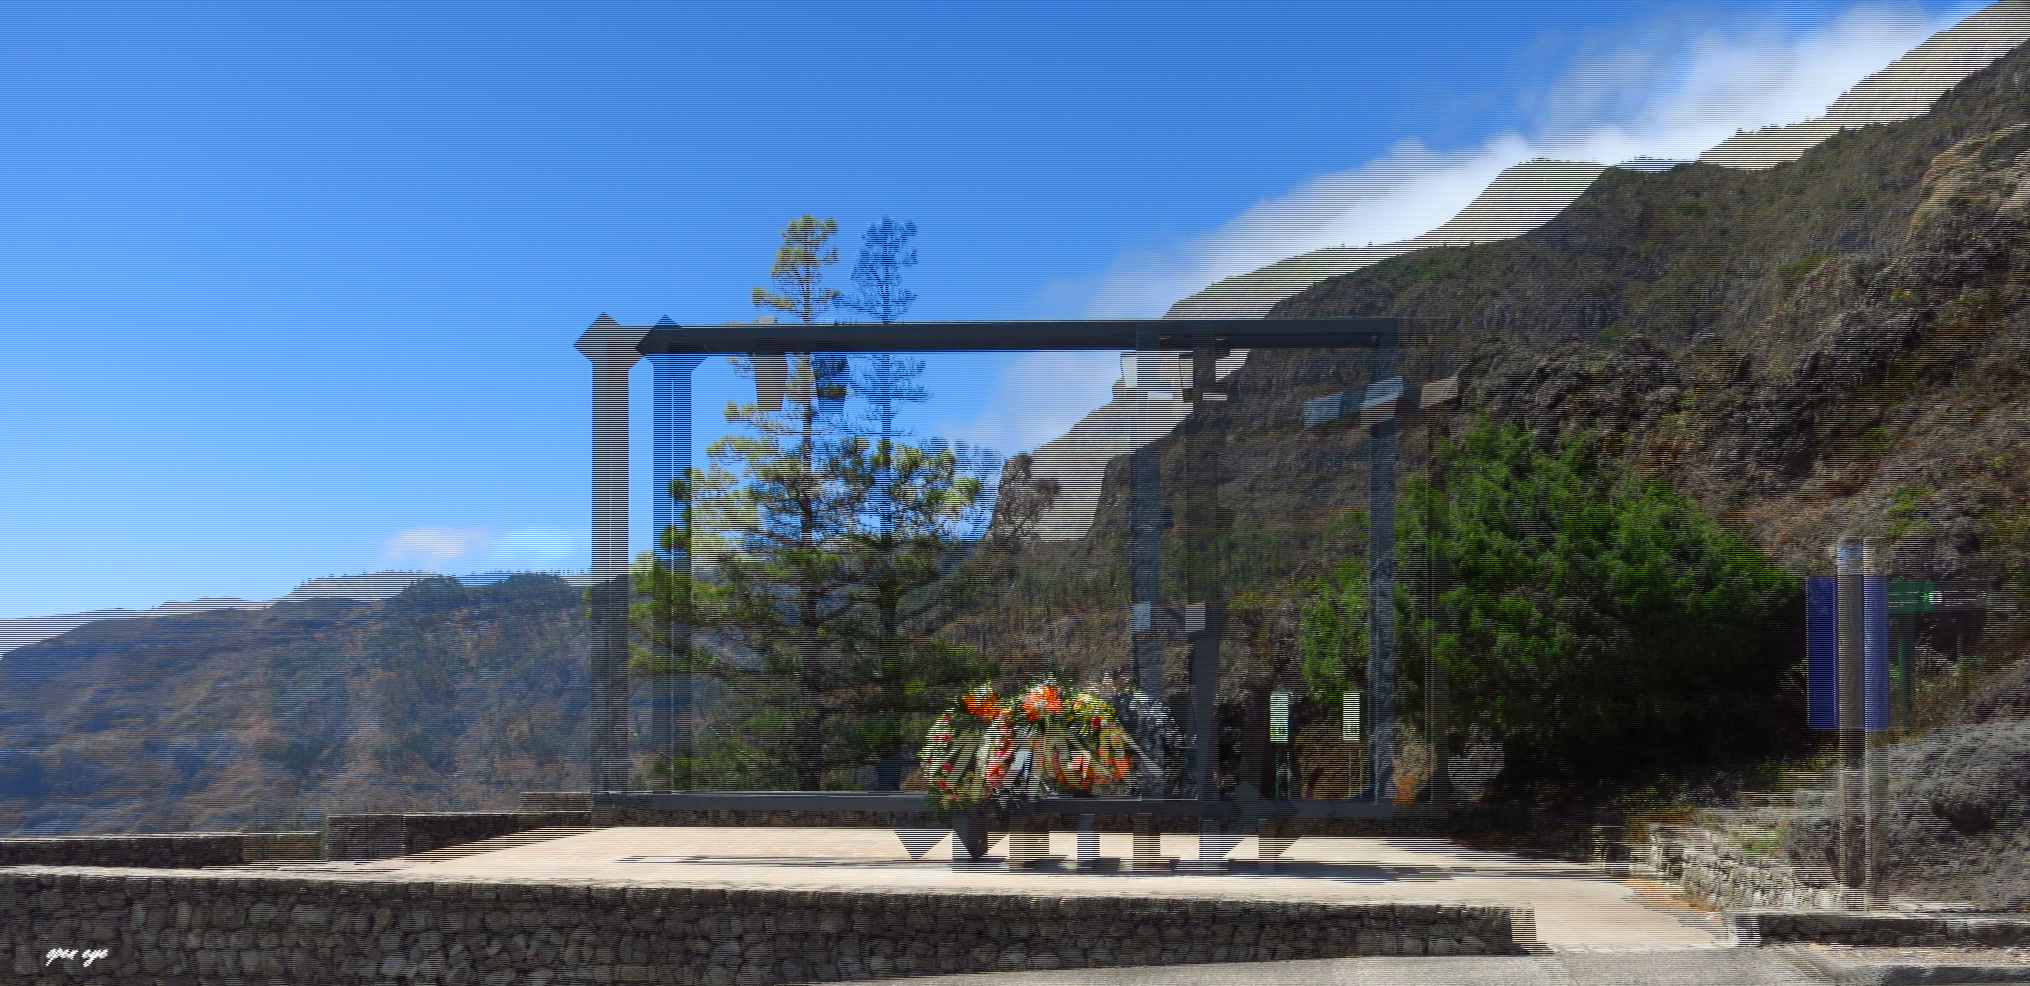 Red de Miradores del Parque National de Garajonay -  3D Interlaced